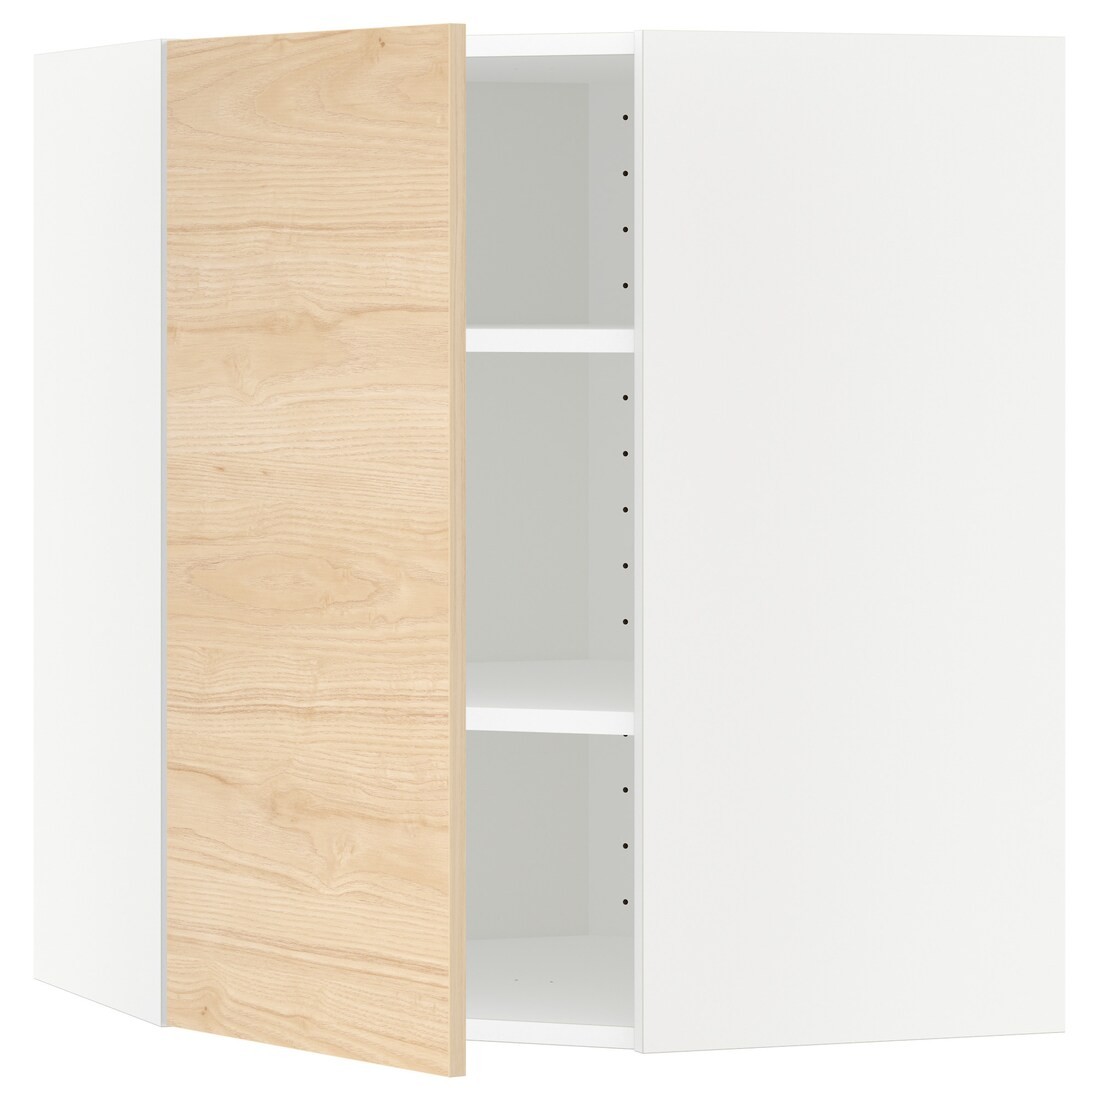 IKEA METOD МЕТОД Углов настенный шкаф, белый / Askersund узор светлый ясень, 68x80 см 19215755 192.157.55